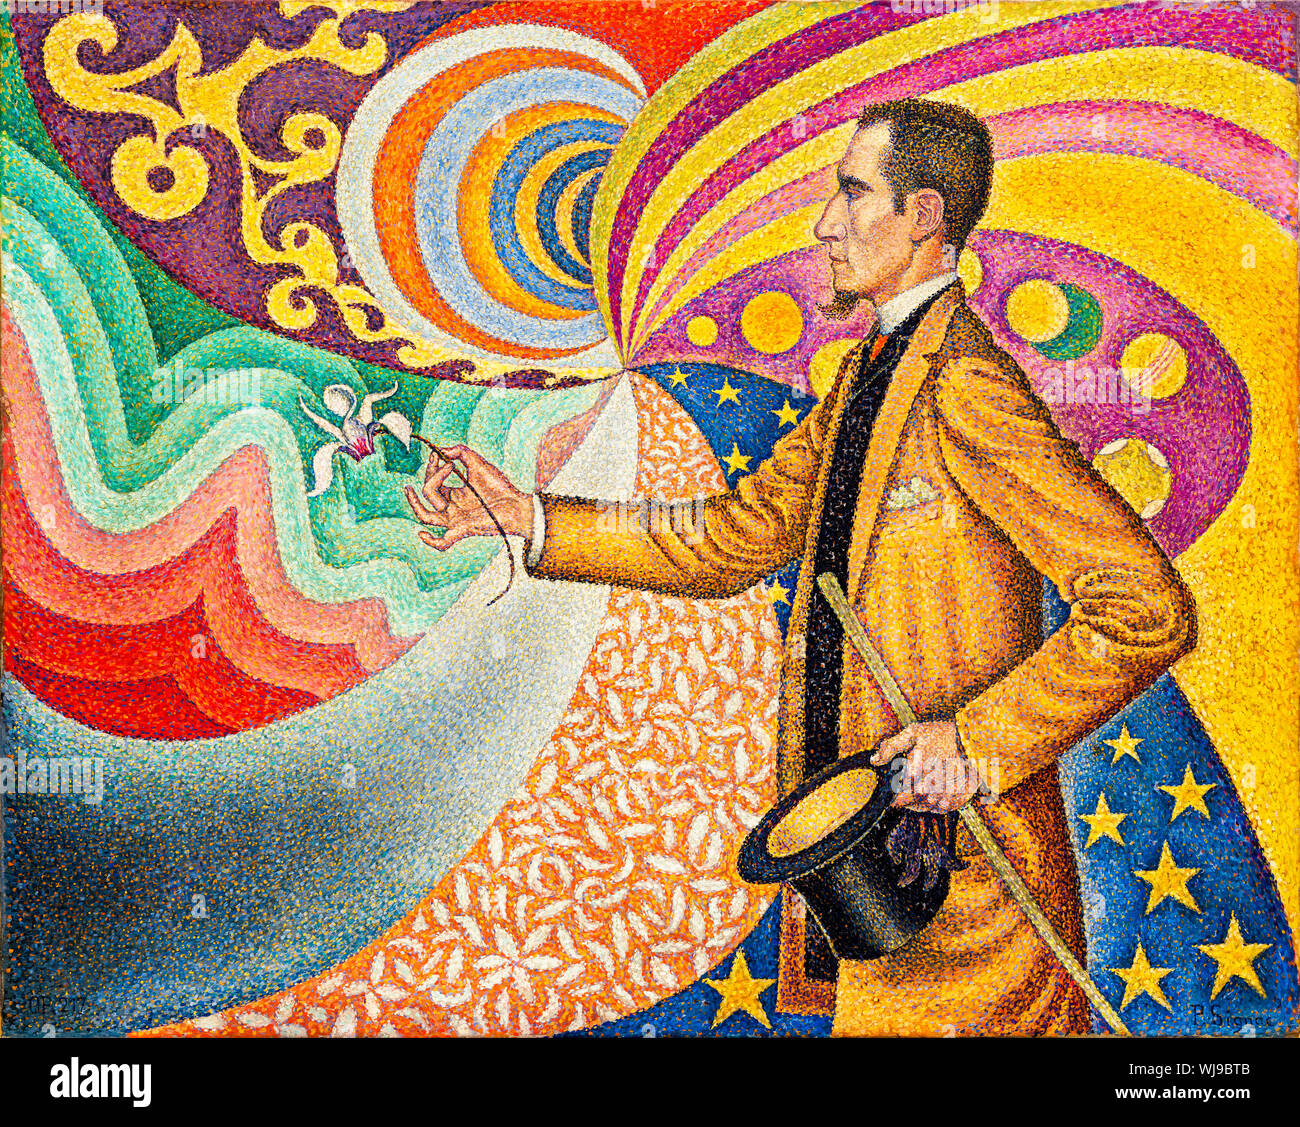 Paul Signac, portrait, opus 217, contre l'émail d'un arrière-plan rythmique avec des battements et des angles, des tons et des teintes, Portrait de M. Félix Fénéon en 1890, 1890, peinture néo-impressionniste - art moderne Banque D'Images